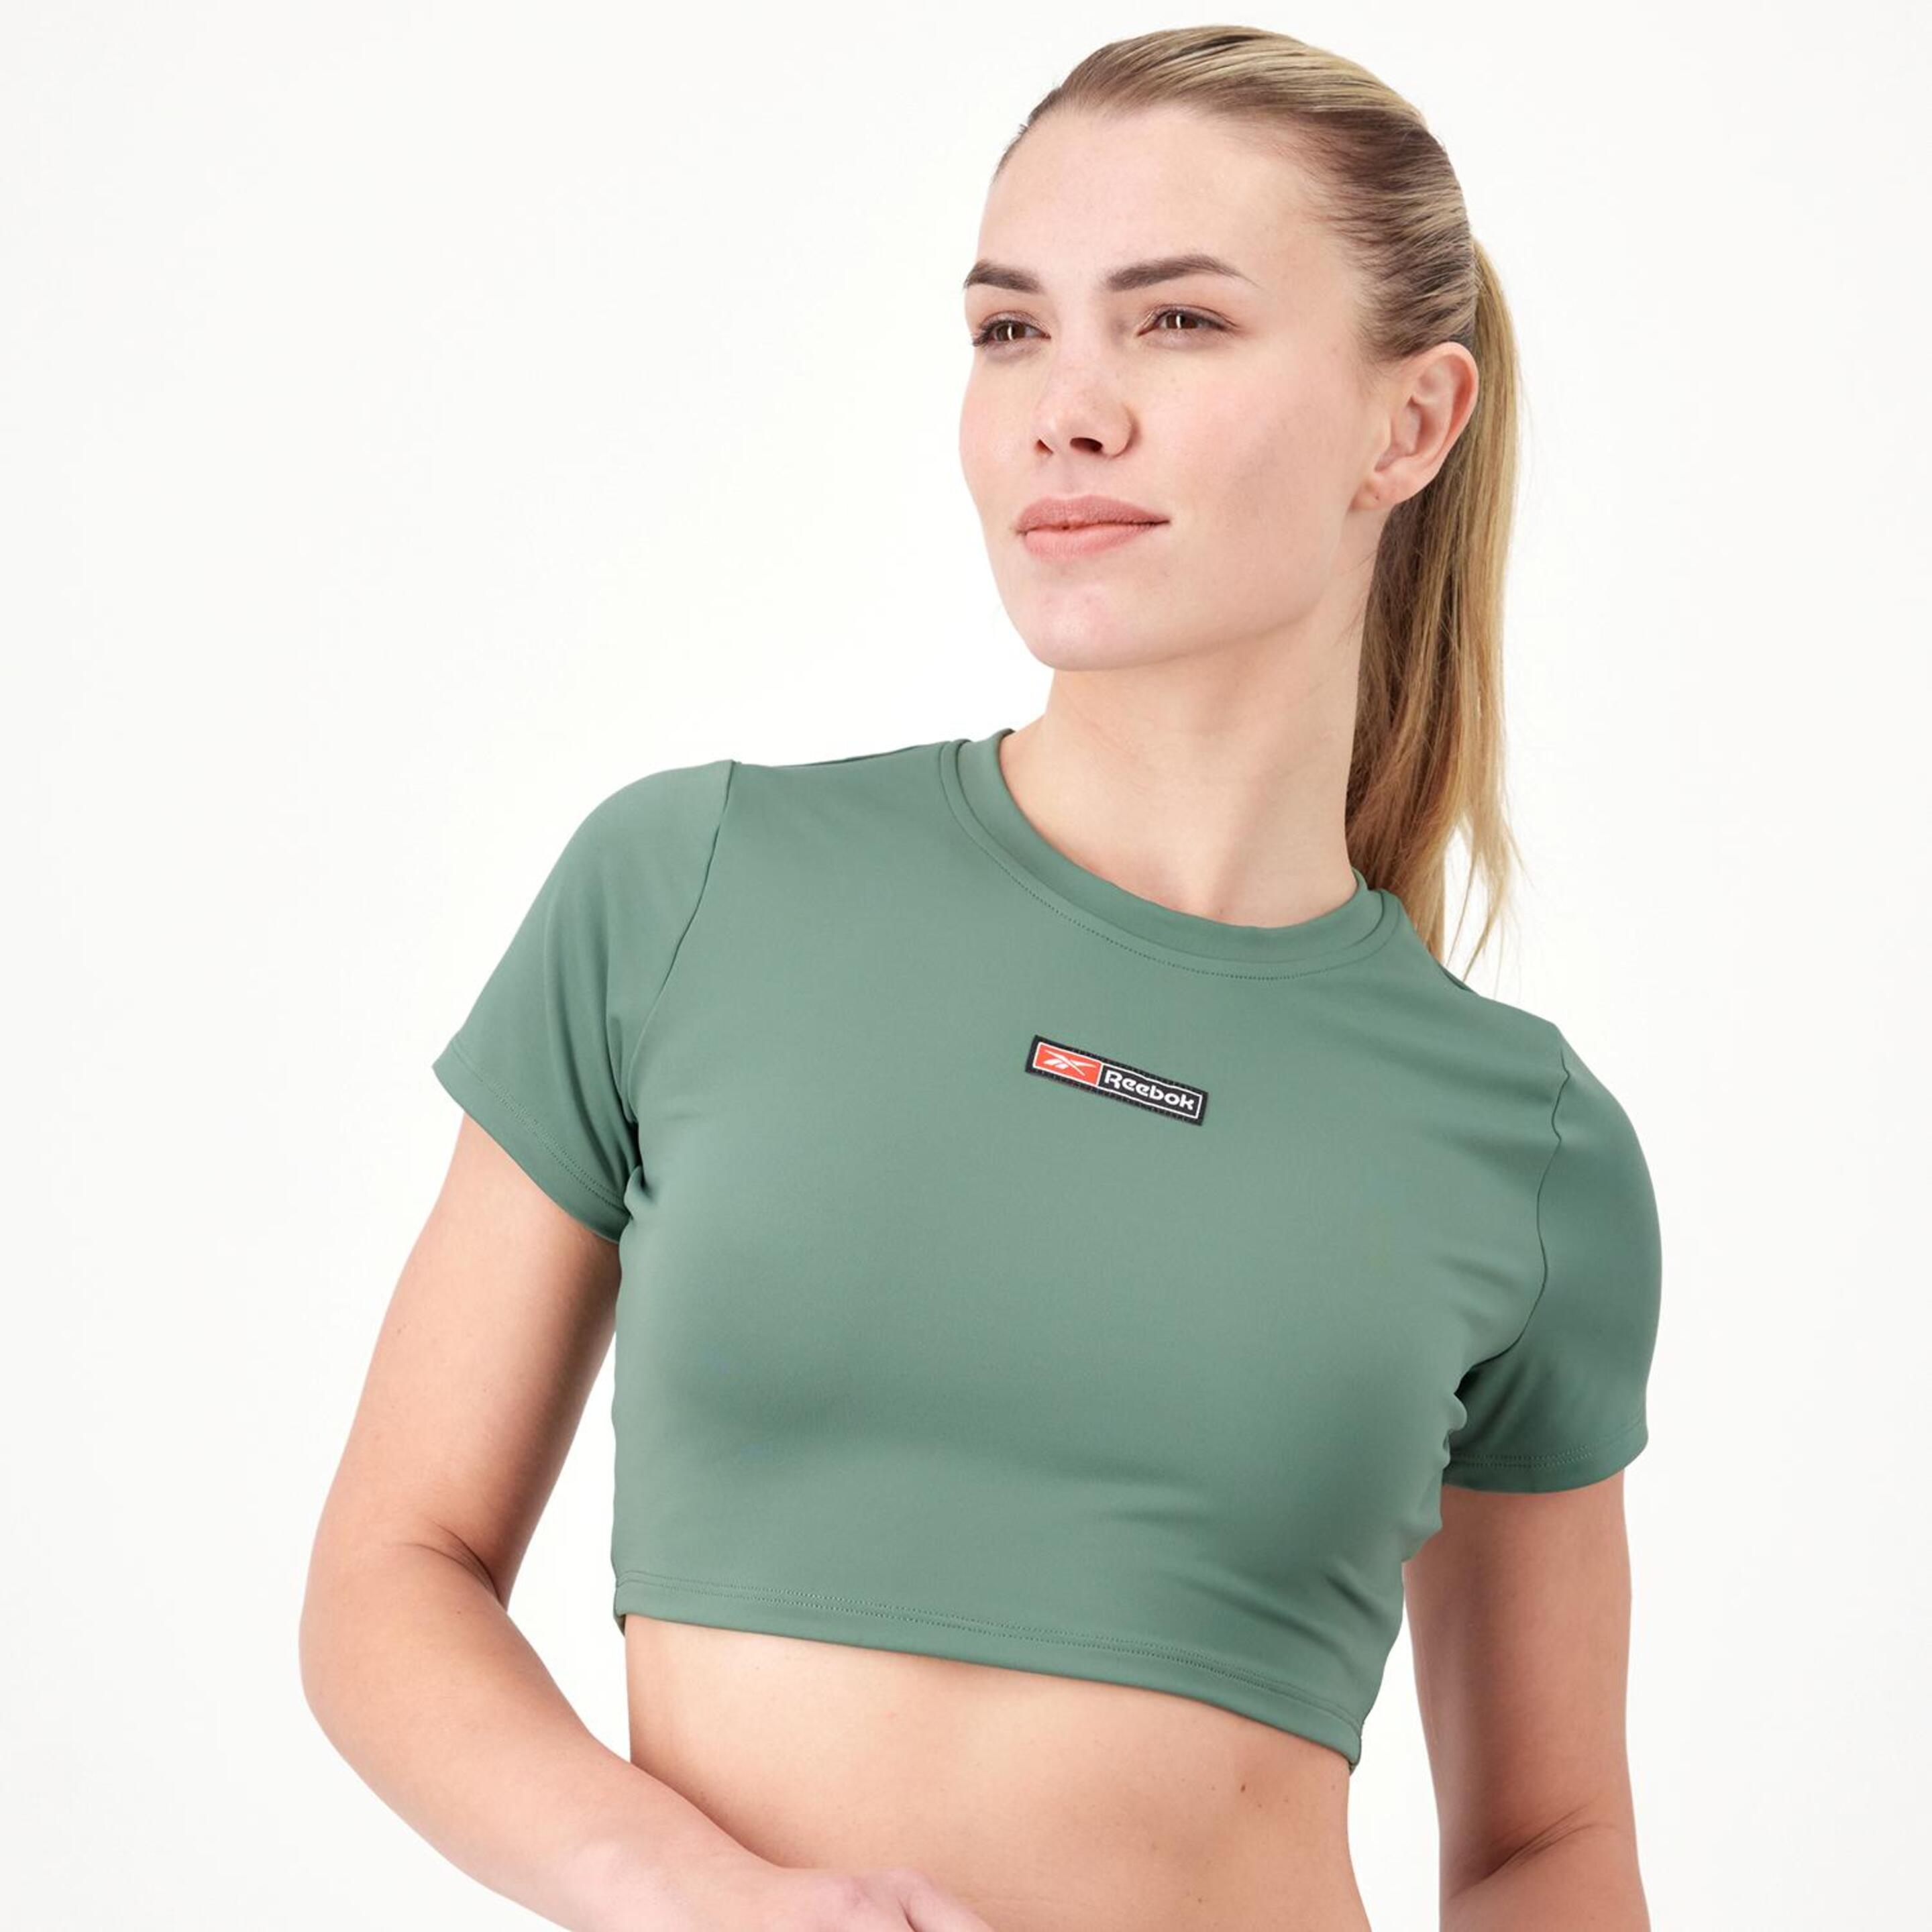 Reebok Performance - verde - Camiseta Crop Top Mujer